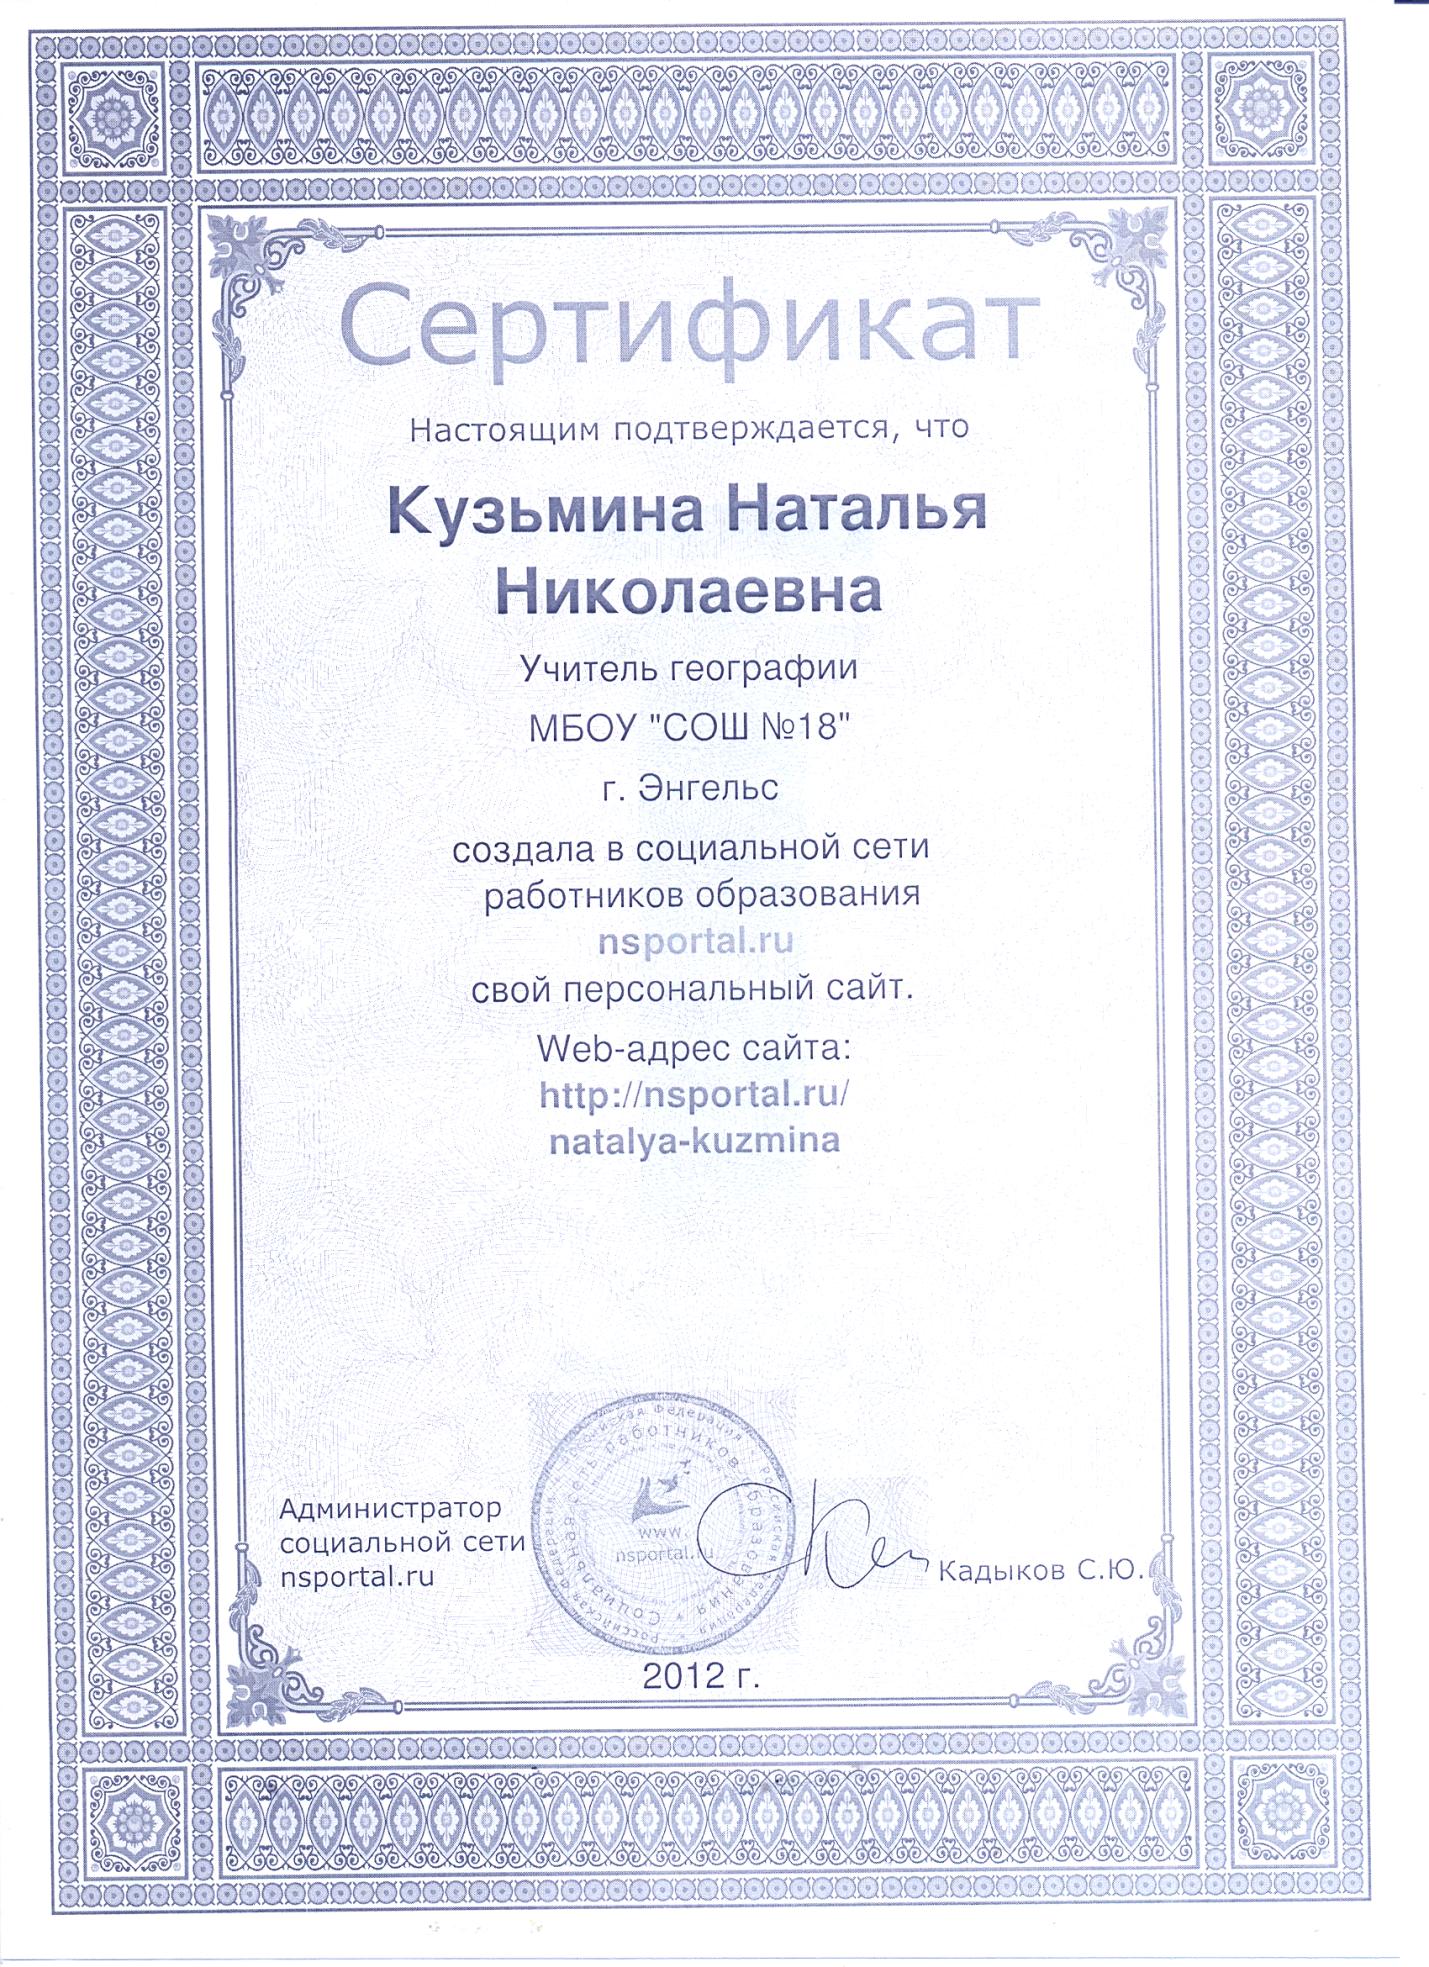 Сертификат о создании сайта в социальной сети работников образования